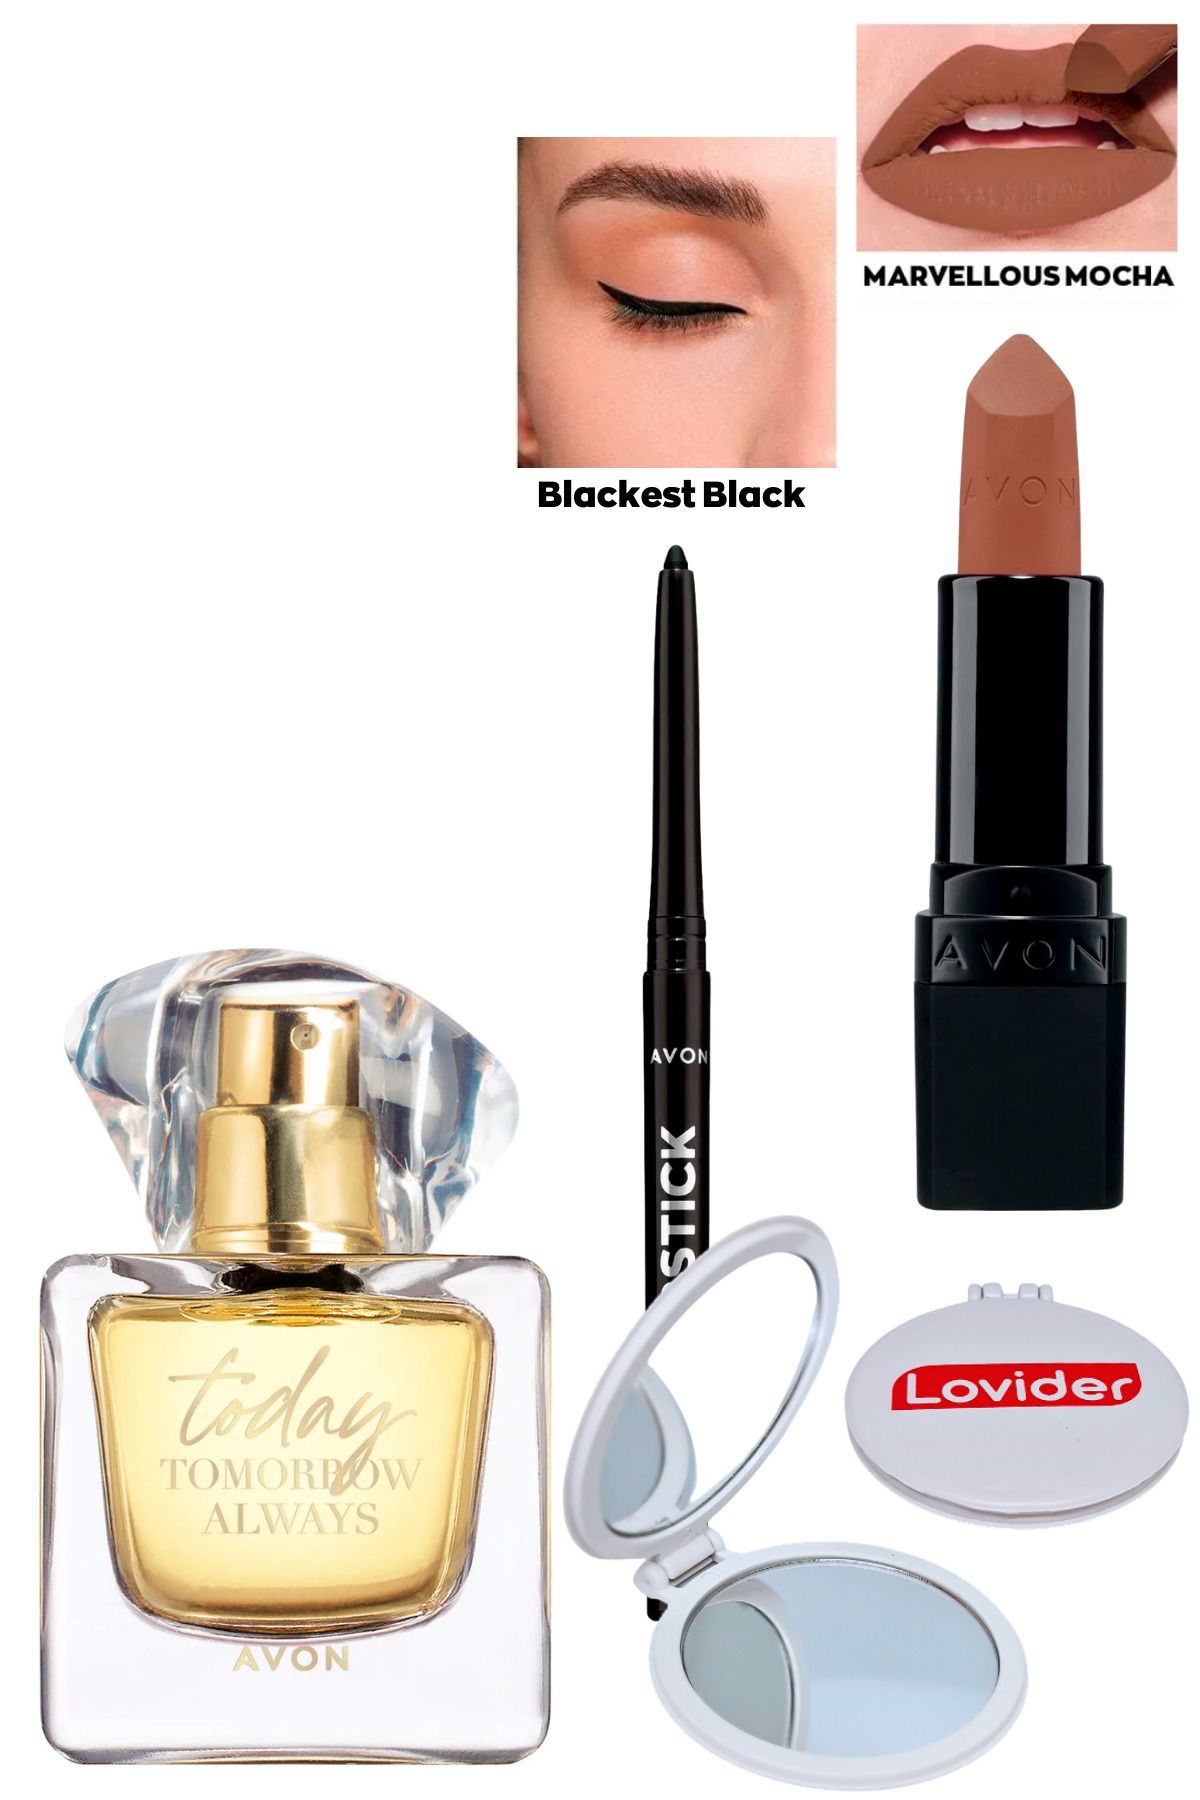 Avon TTA Today Kadın Parfüm + Siyah Göz Kalemi + Marvellous Mocha Mat Ruj + Lovider Cep Aynası